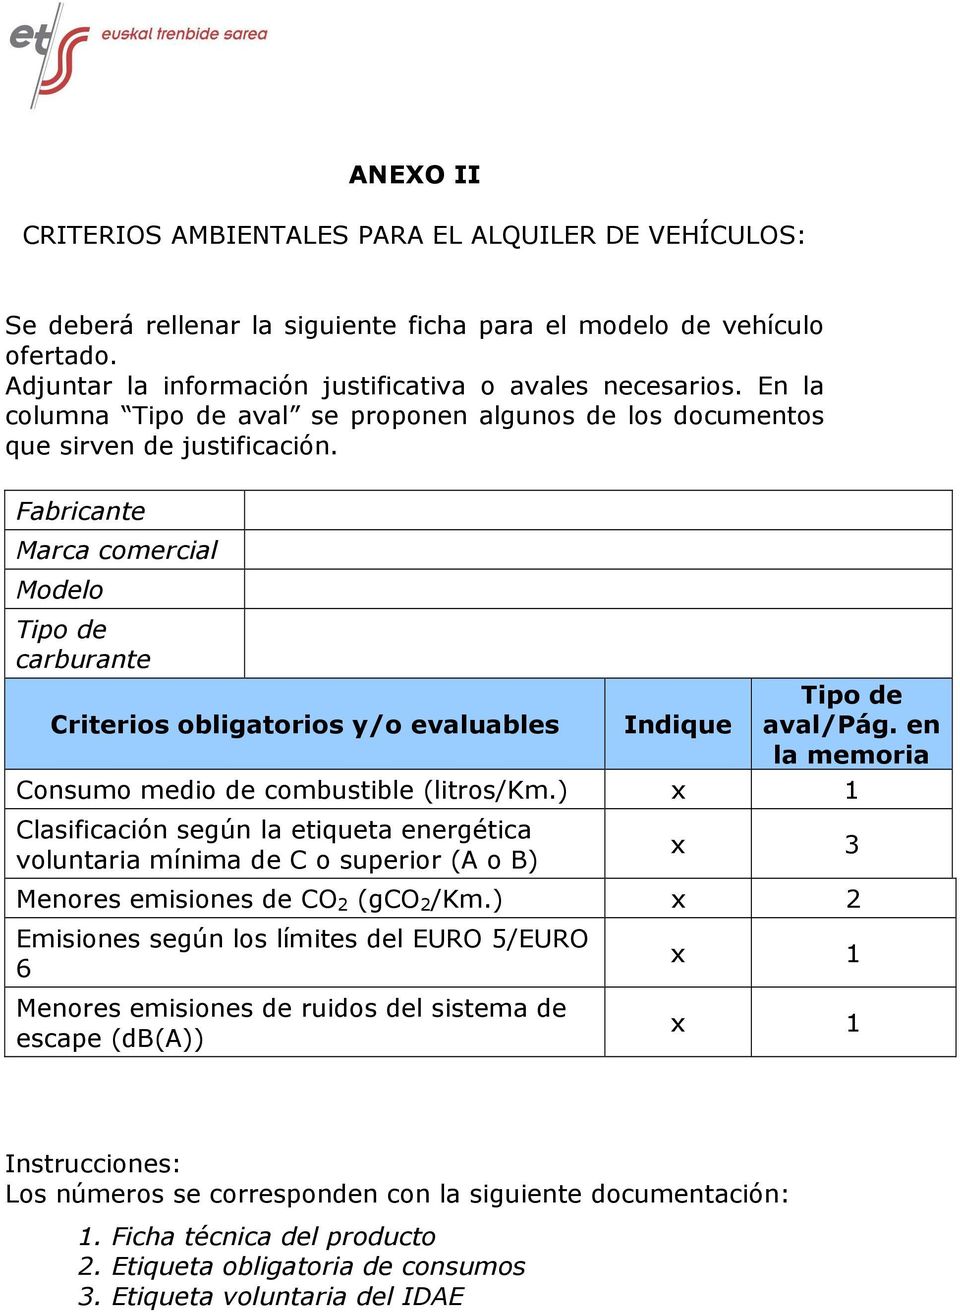 en la memria Cnsum medi de cmbustible (litrs/km.) x 1 Clasificación según la etiqueta energética vluntaria mínima de C superir (A B) x 3 Menres emisines de CO 2 (gco 2 /Km.